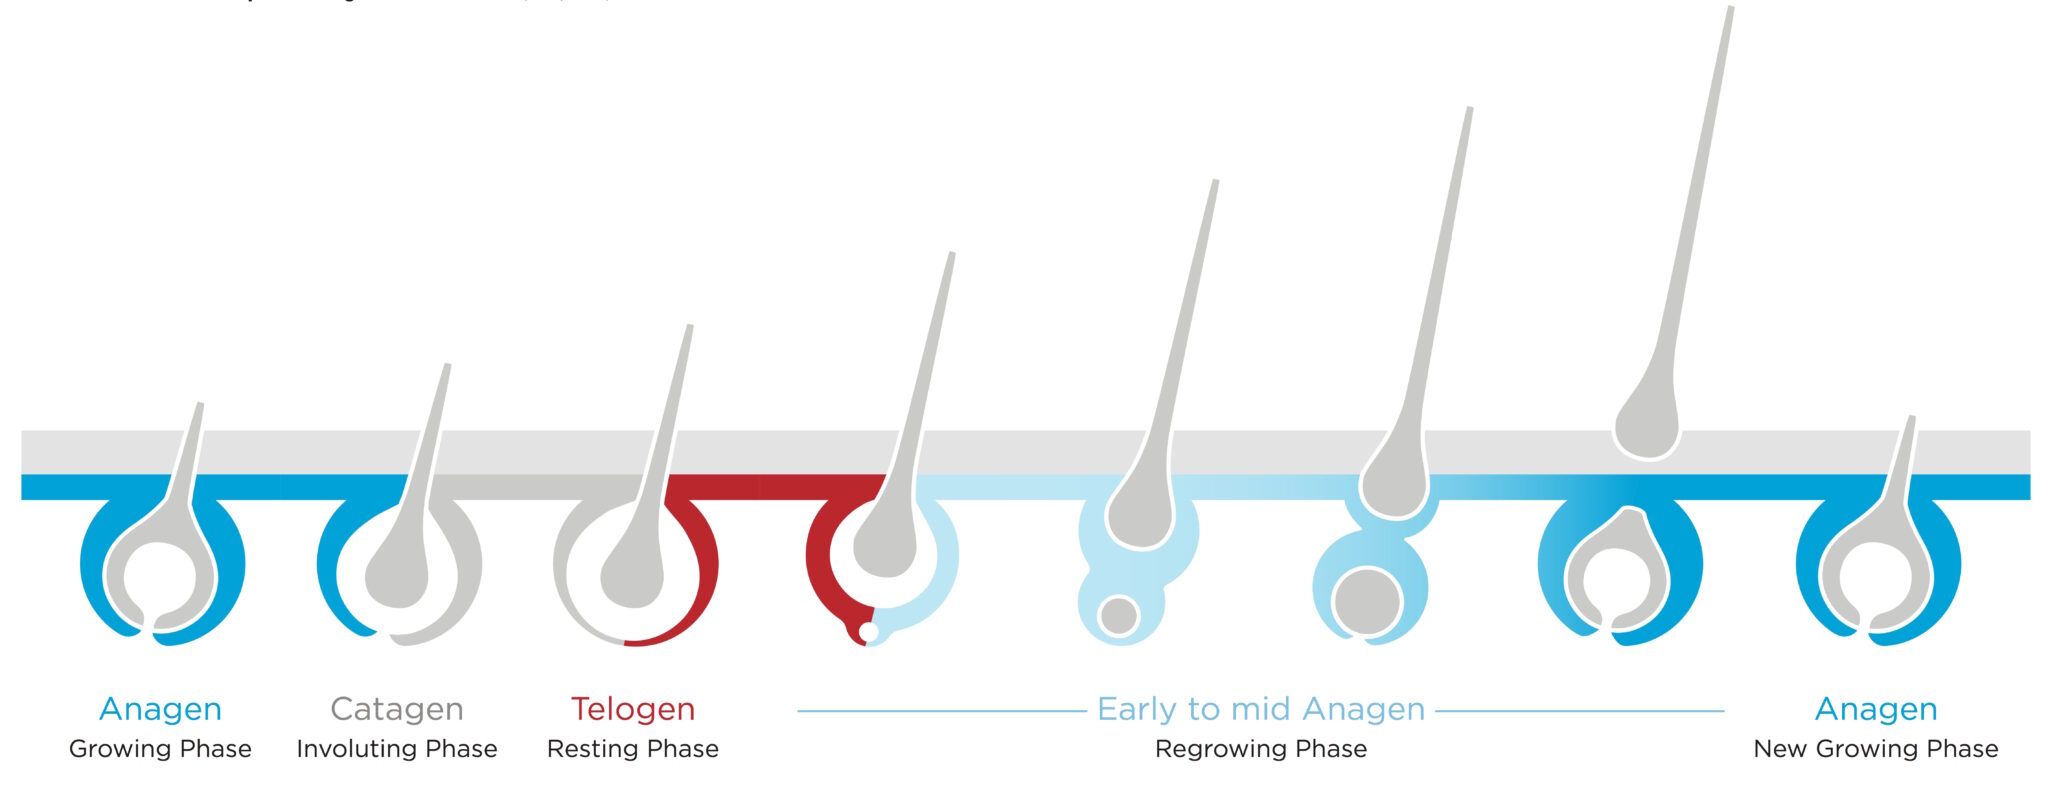 Hair growth cycle, anagen, catagen, telogen